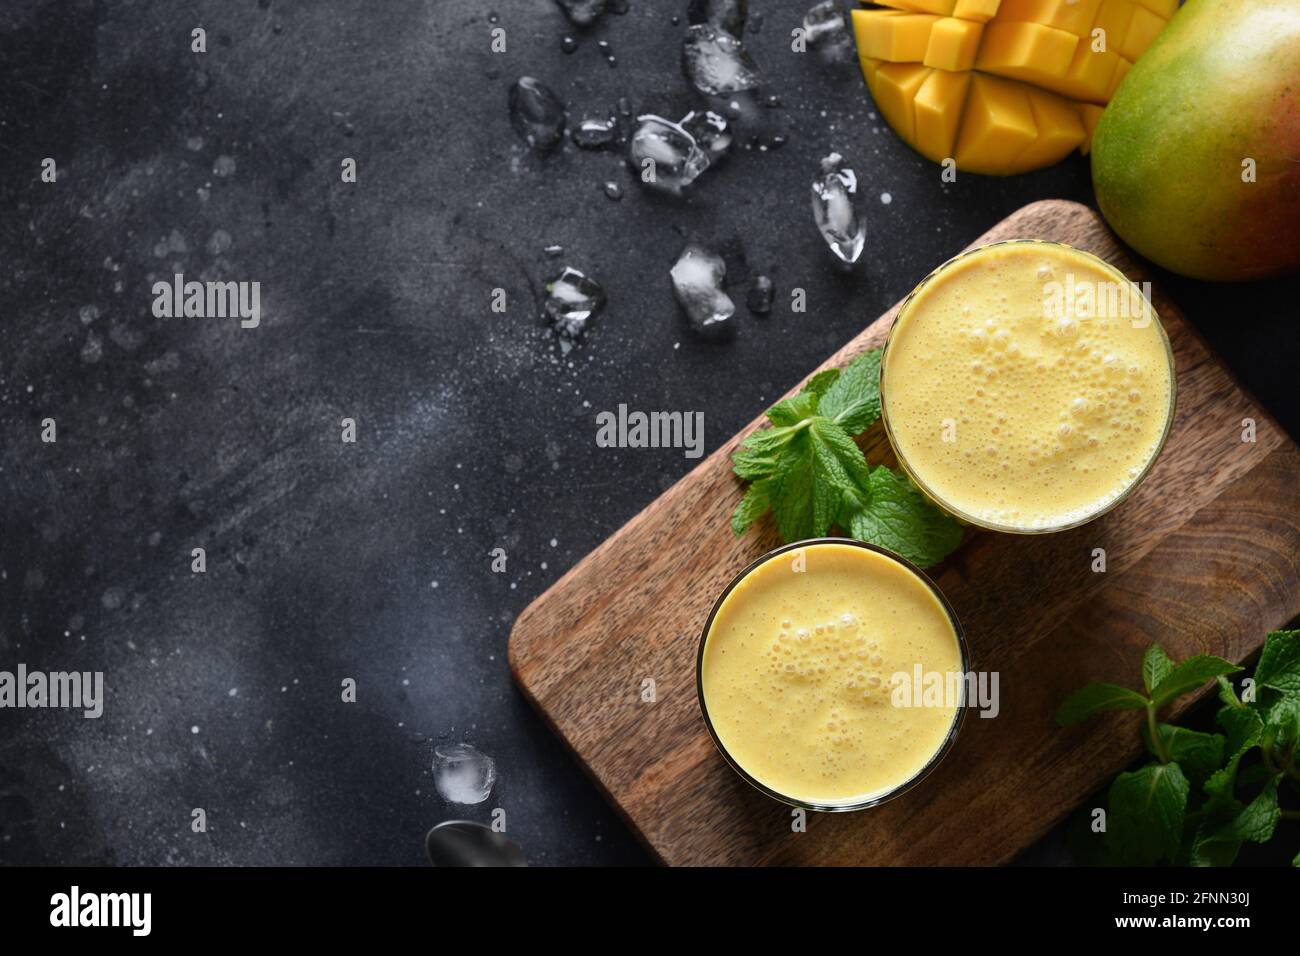 Deux lassi Mango ou smoothies sur fond noir, vue de dessus avec espace de copie. Lassi traditionnel indien de mangue froide fait de yaourt, eau, épices, fruits Banque D'Images